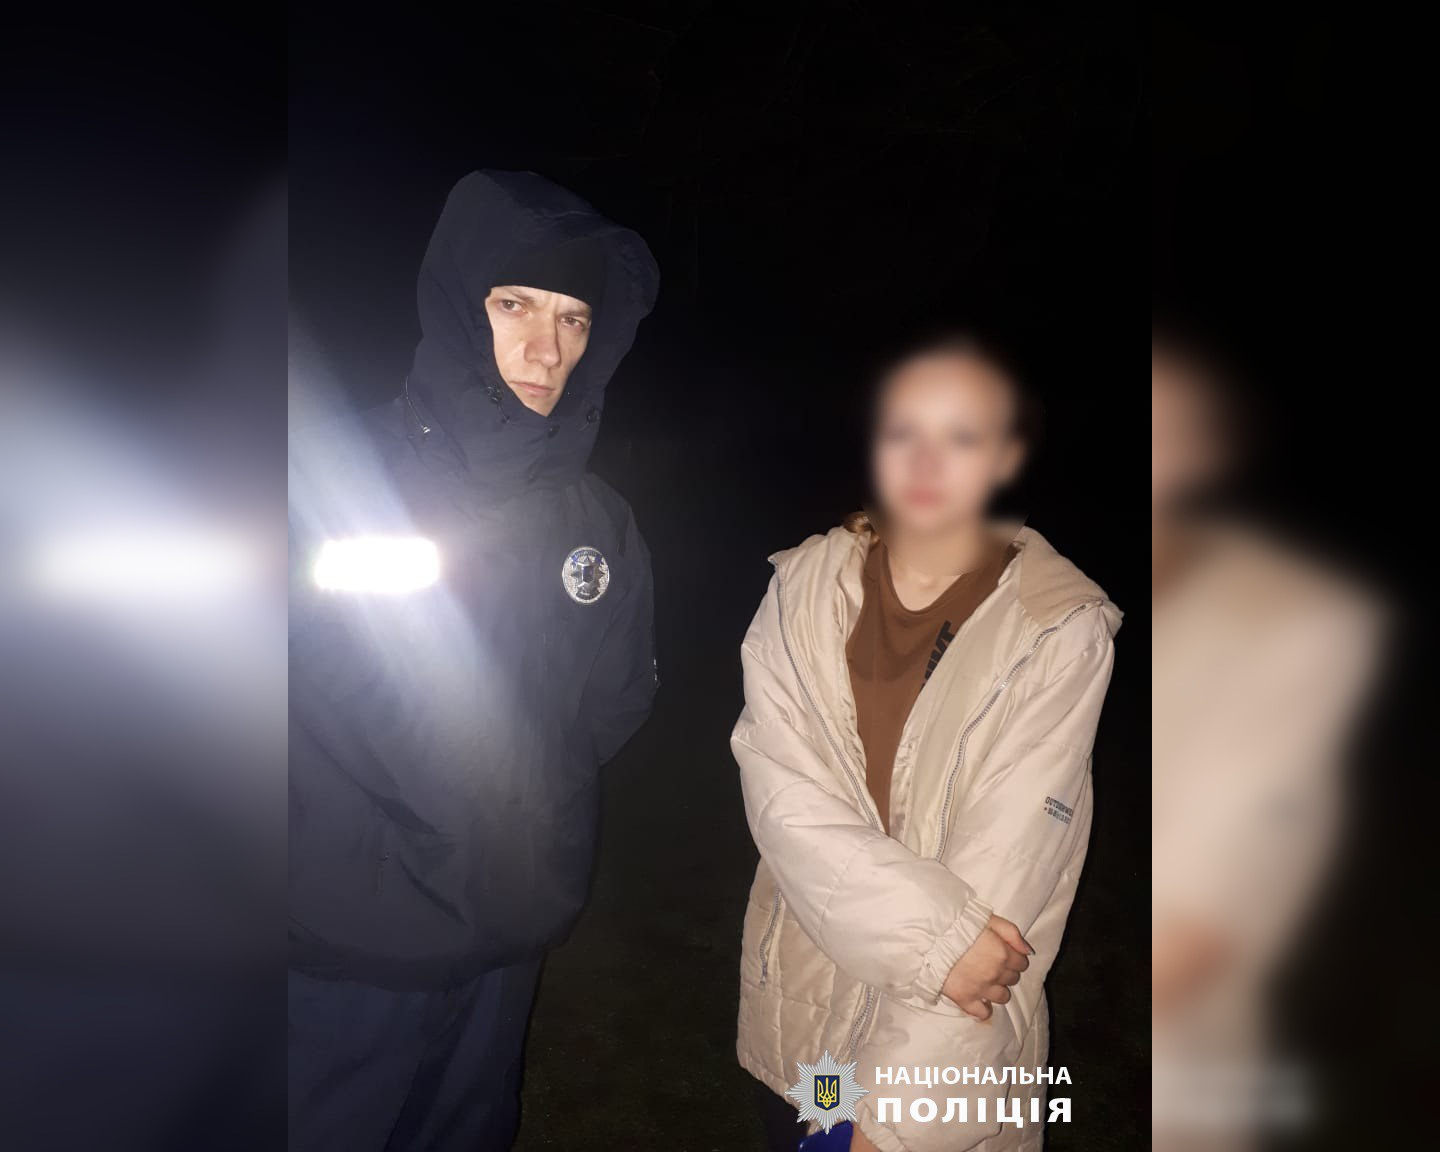 Пішла гуляти та не повернулась: поліція на Харківщині розшукала дівчину